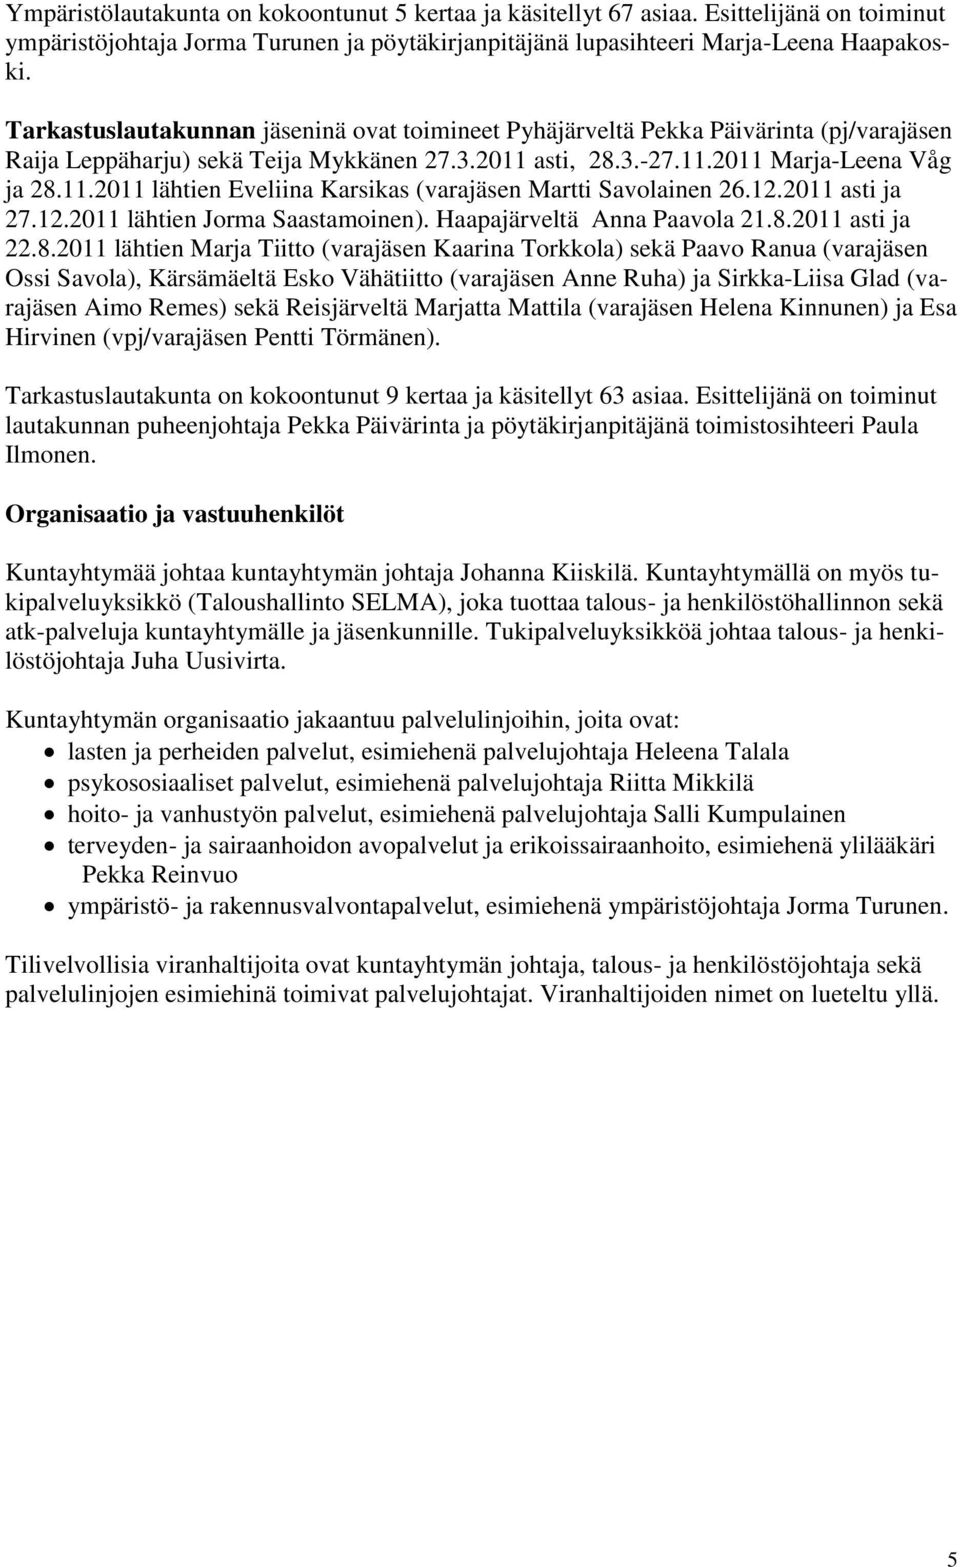 12.2011 asti ja 27.12.2011 lähtien Jorma Saastamoinen). Haapajärveltä Anna Paavola 21.8.